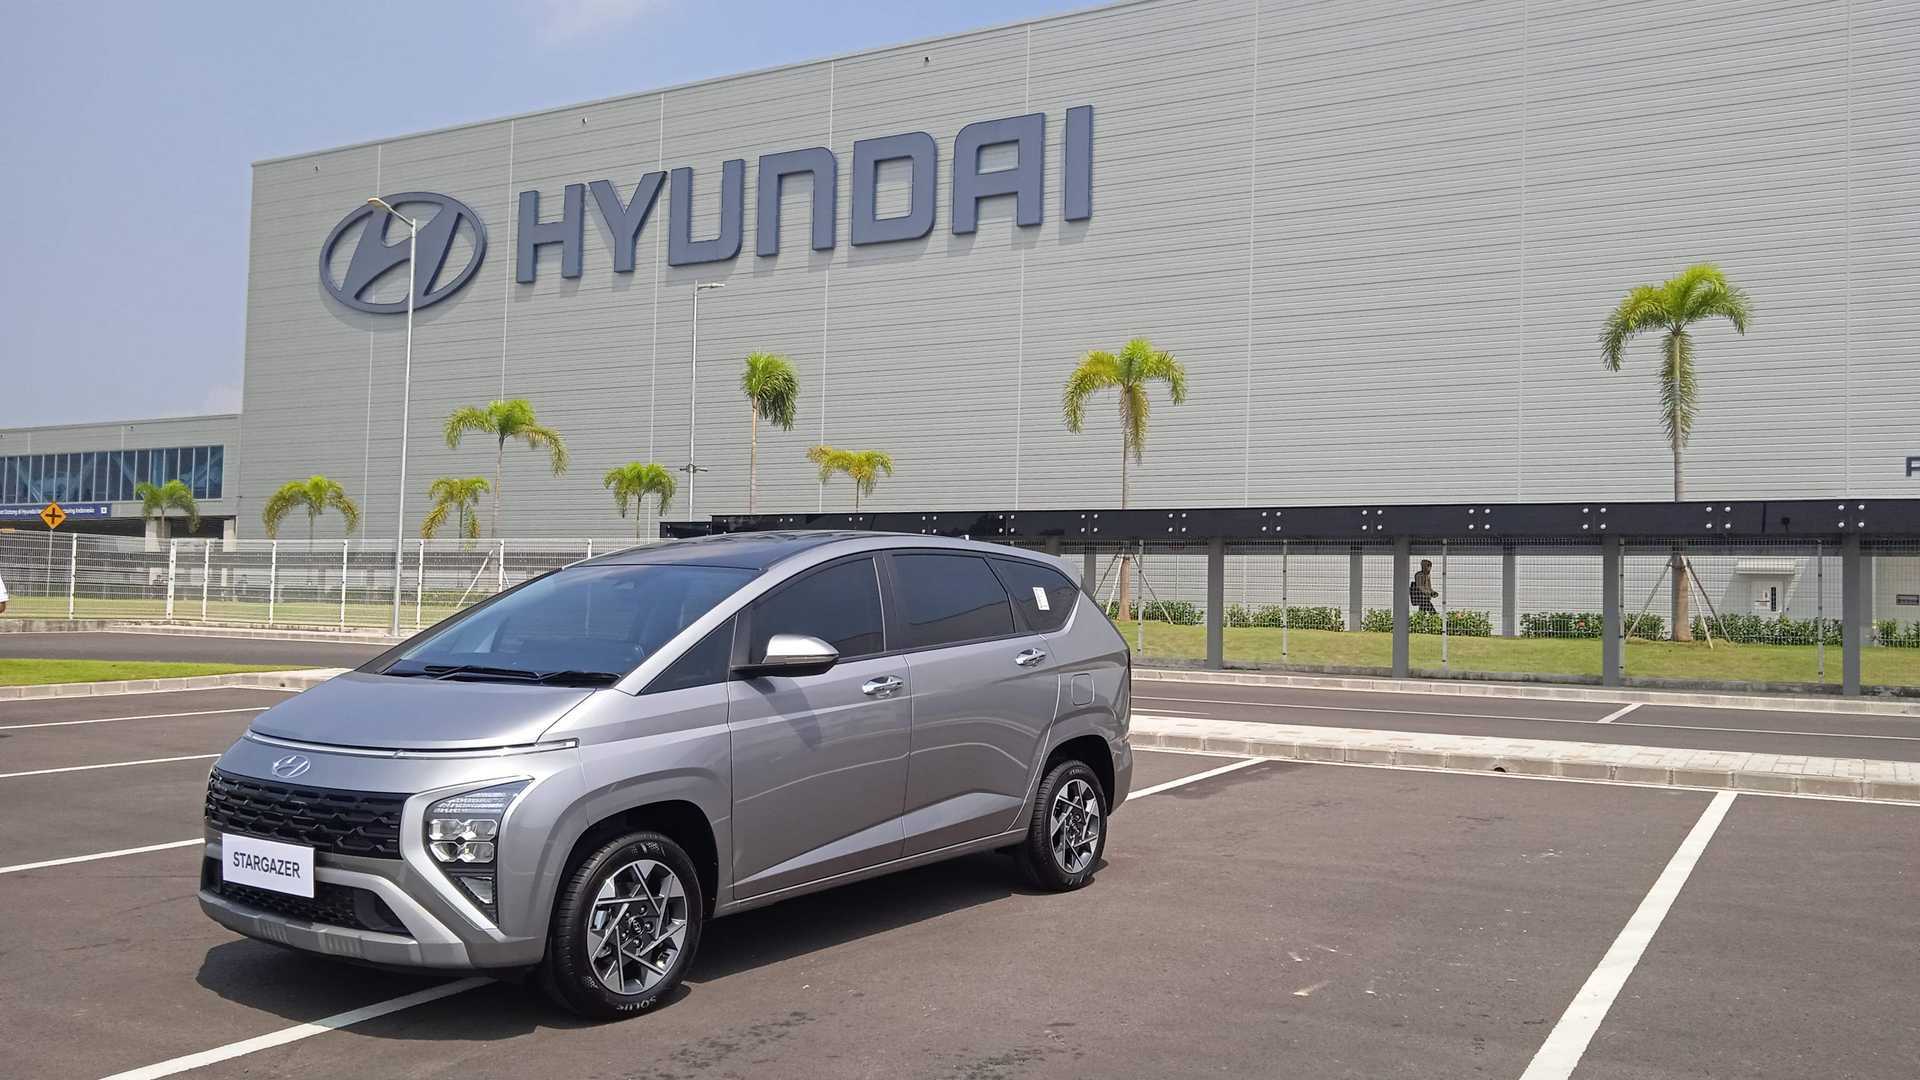 Xem hình xe Hyundai Stargazer chất lượng cao 14